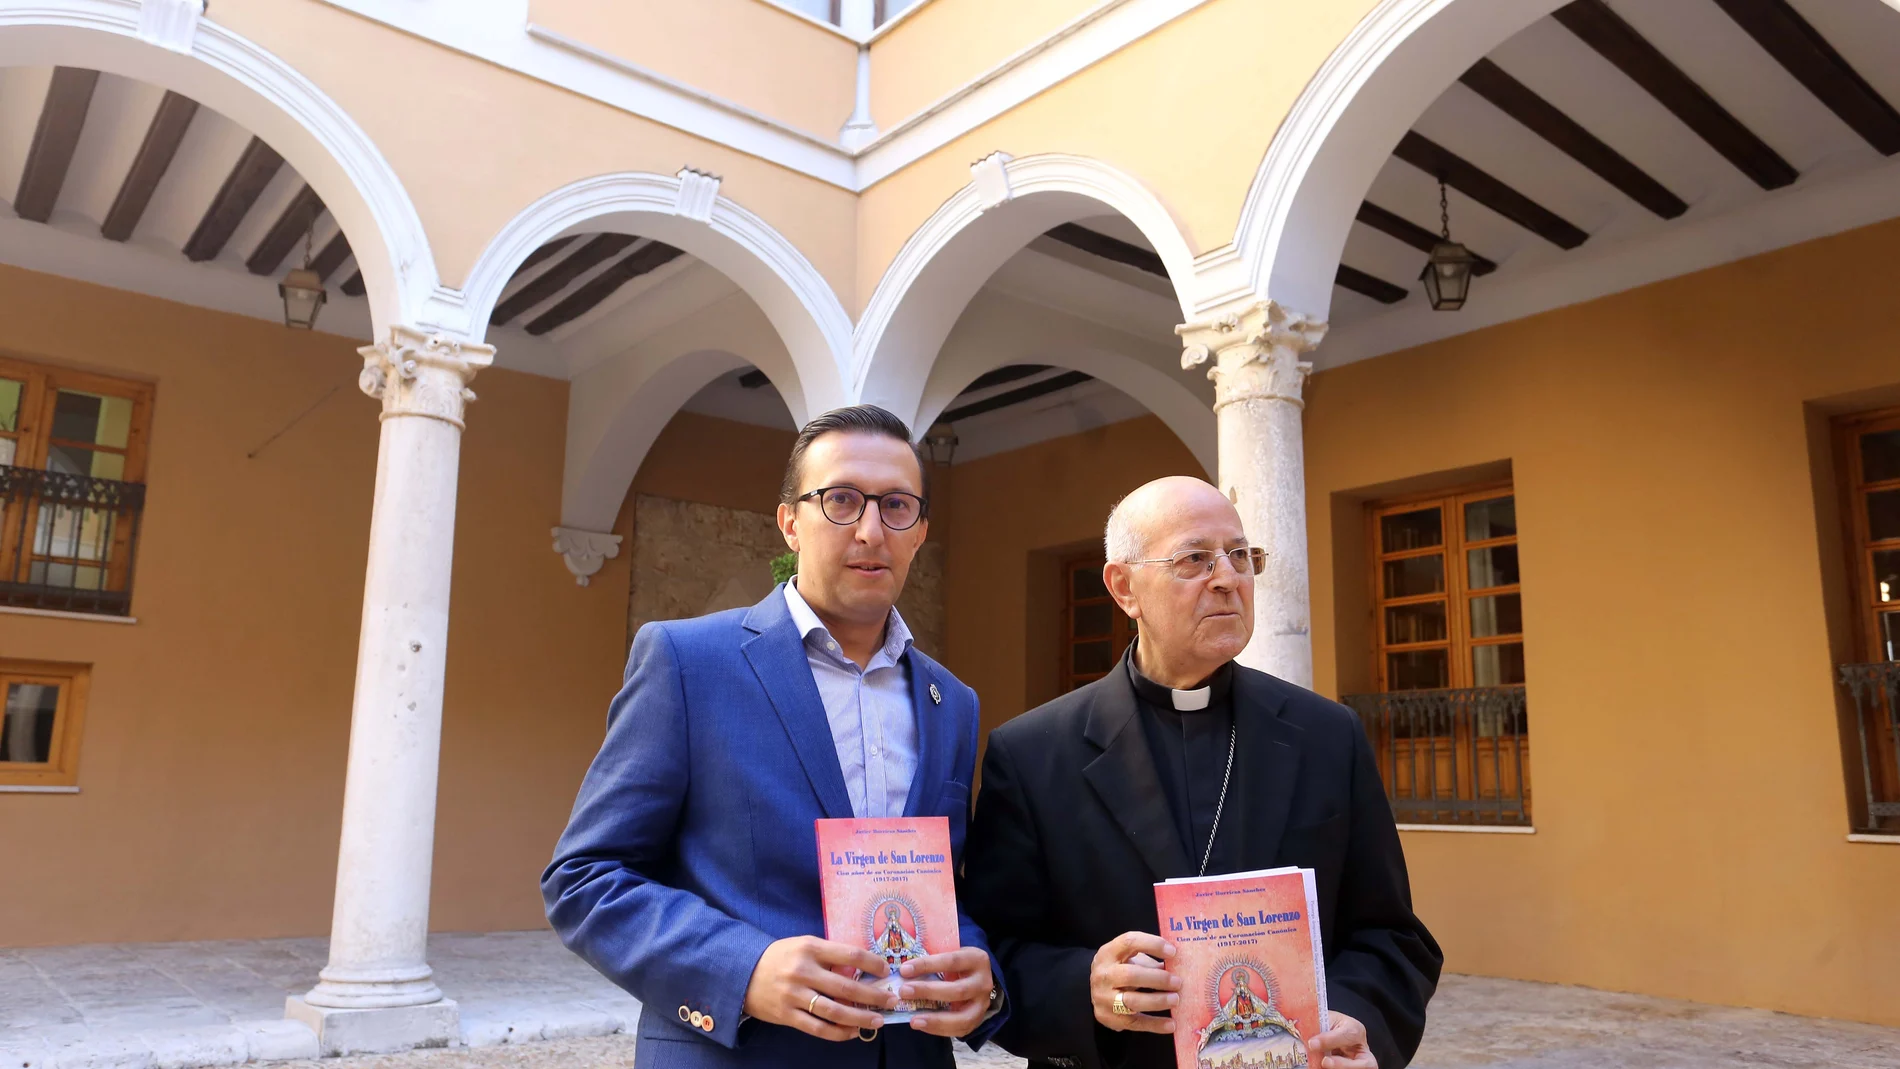 El historiador Javier Burrieza junto al arzobispo Ricardo Blázquez